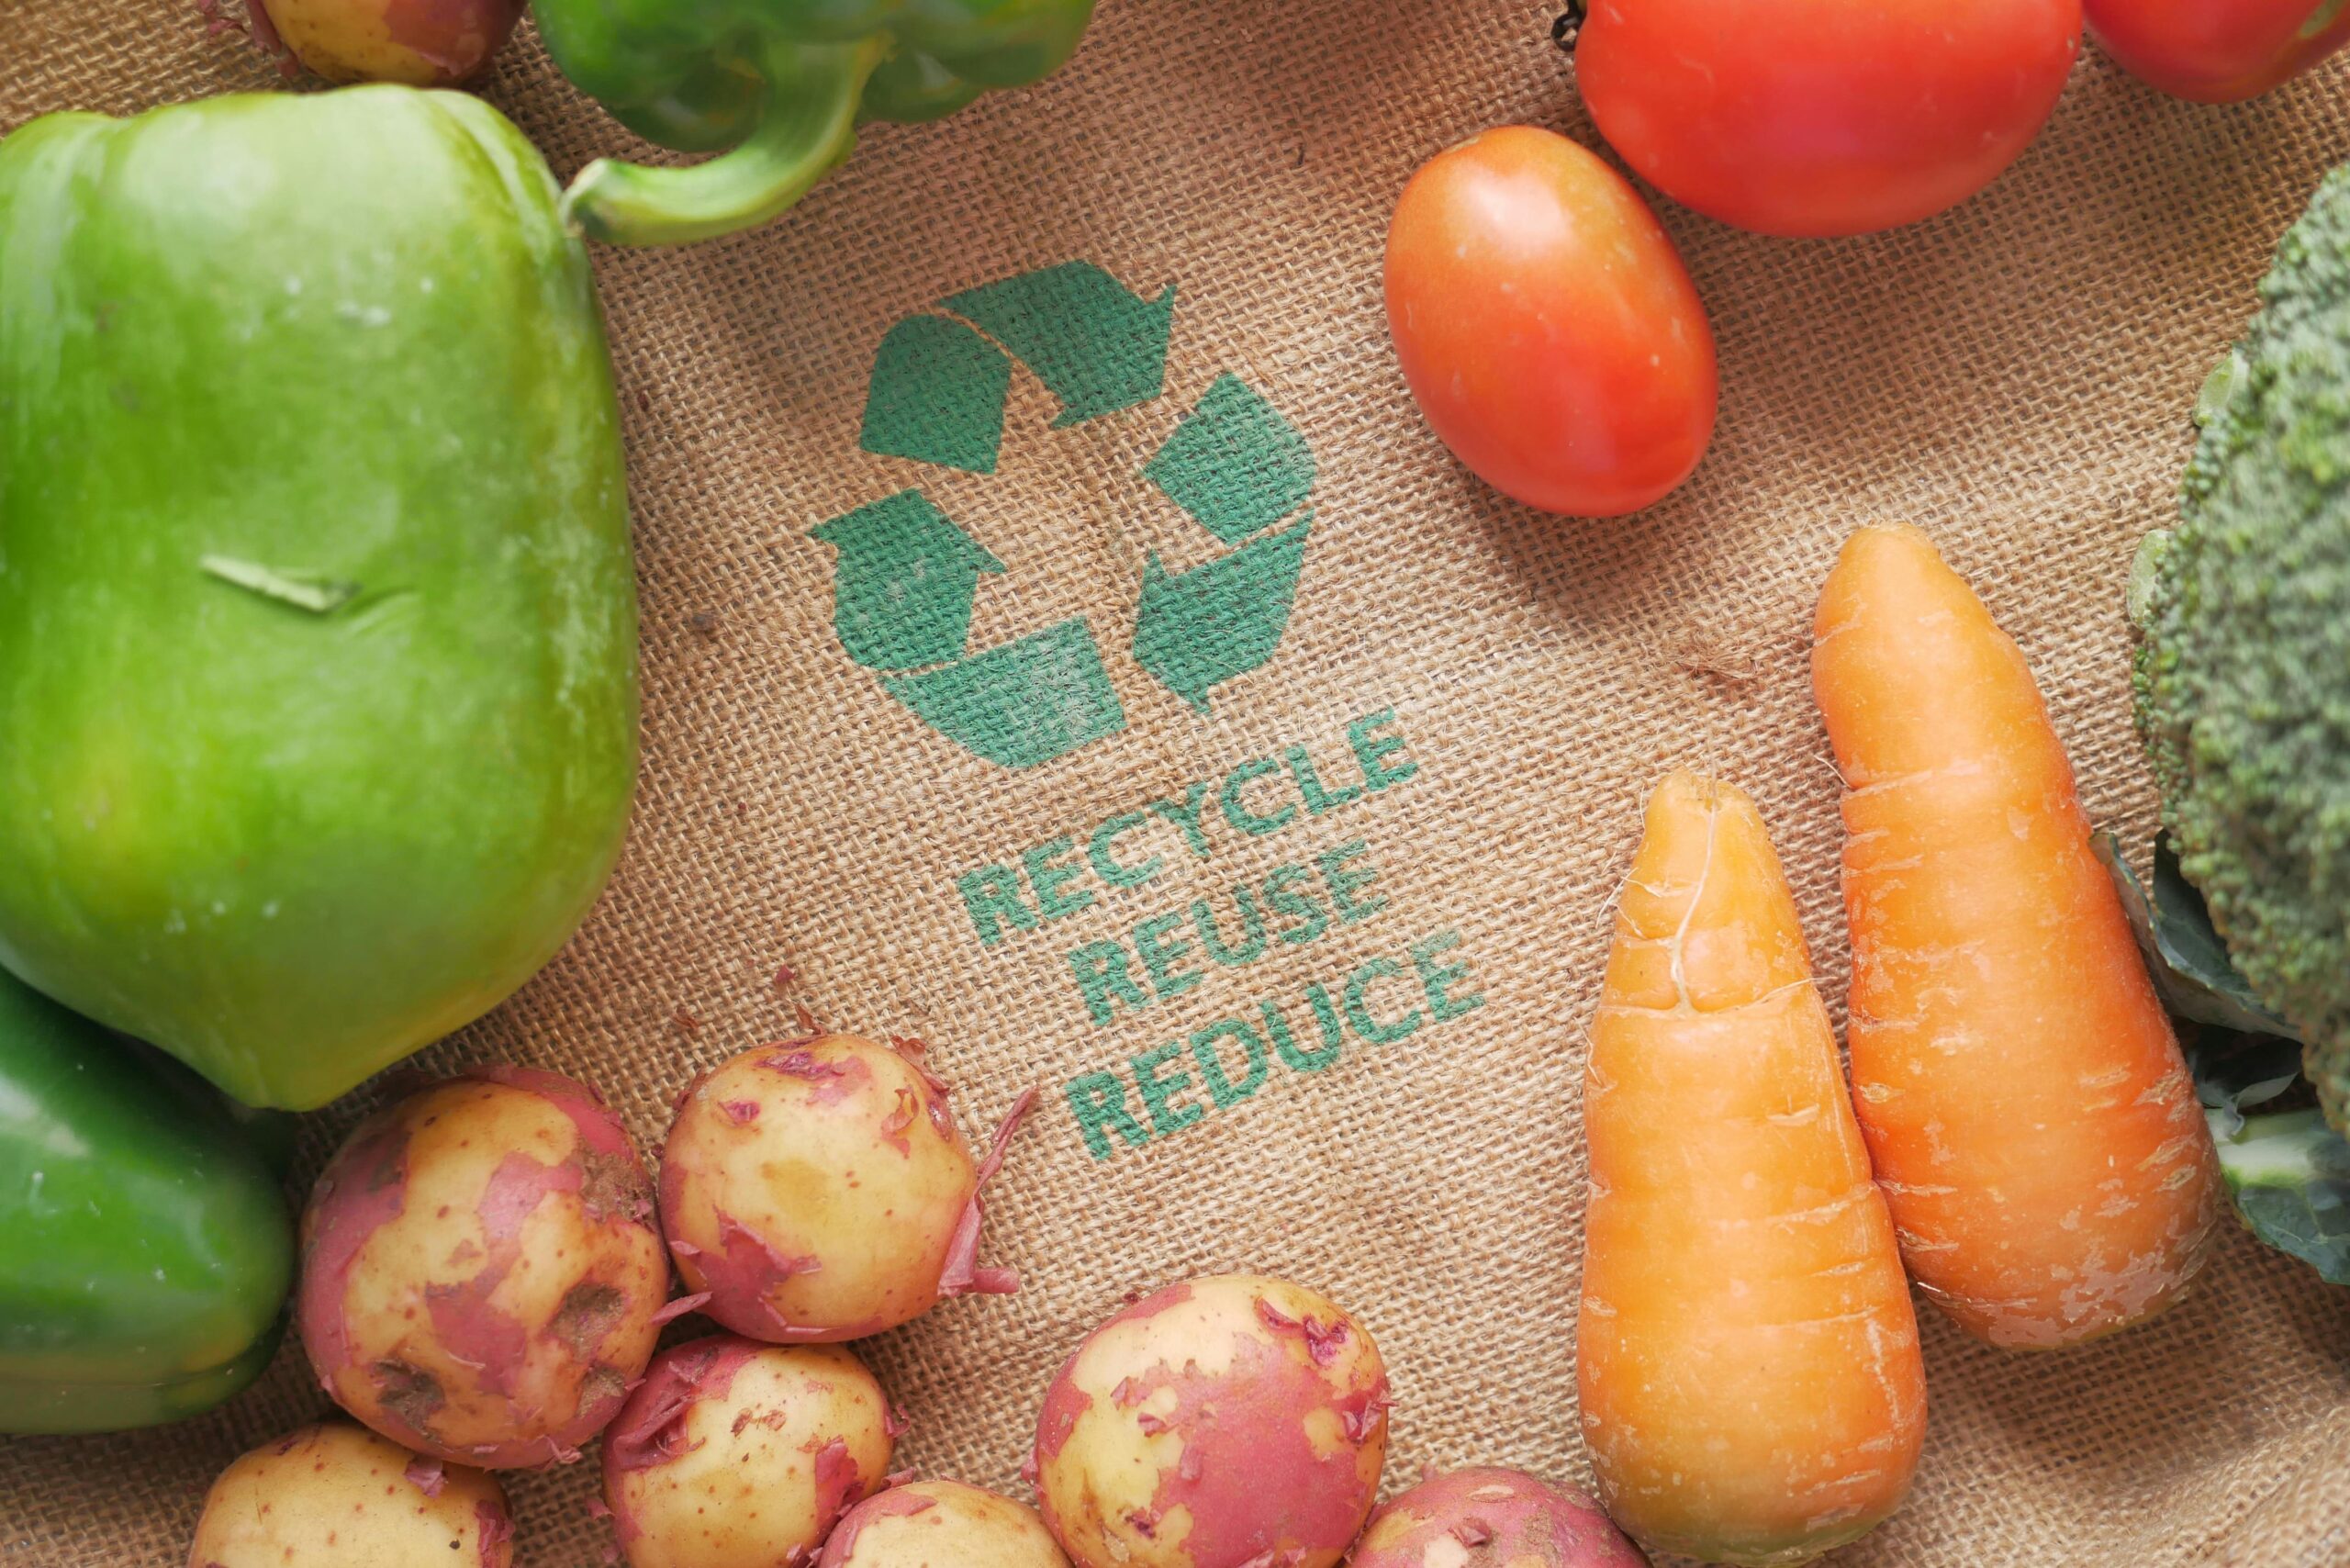 Efektywne zarządzanie odpadami – zero waste w domu i w ogrodzie – ogłoszenie o konkursie dla partnerów KSOW na realizację projektów